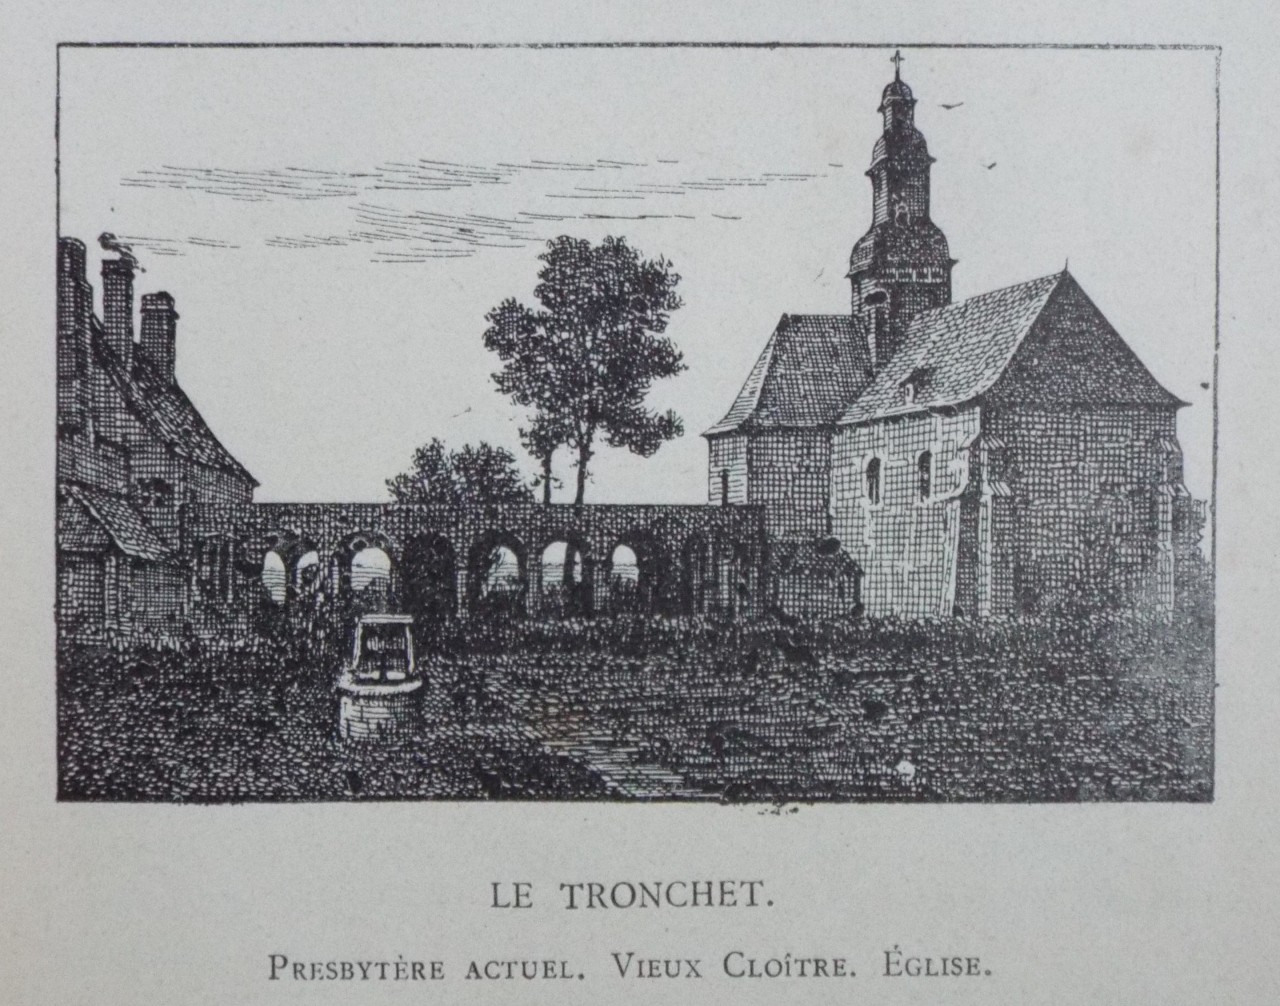 Wood - Le Tronchet. Presbytere Actuel. Eglise.Vieux Cloitre. Eglise.